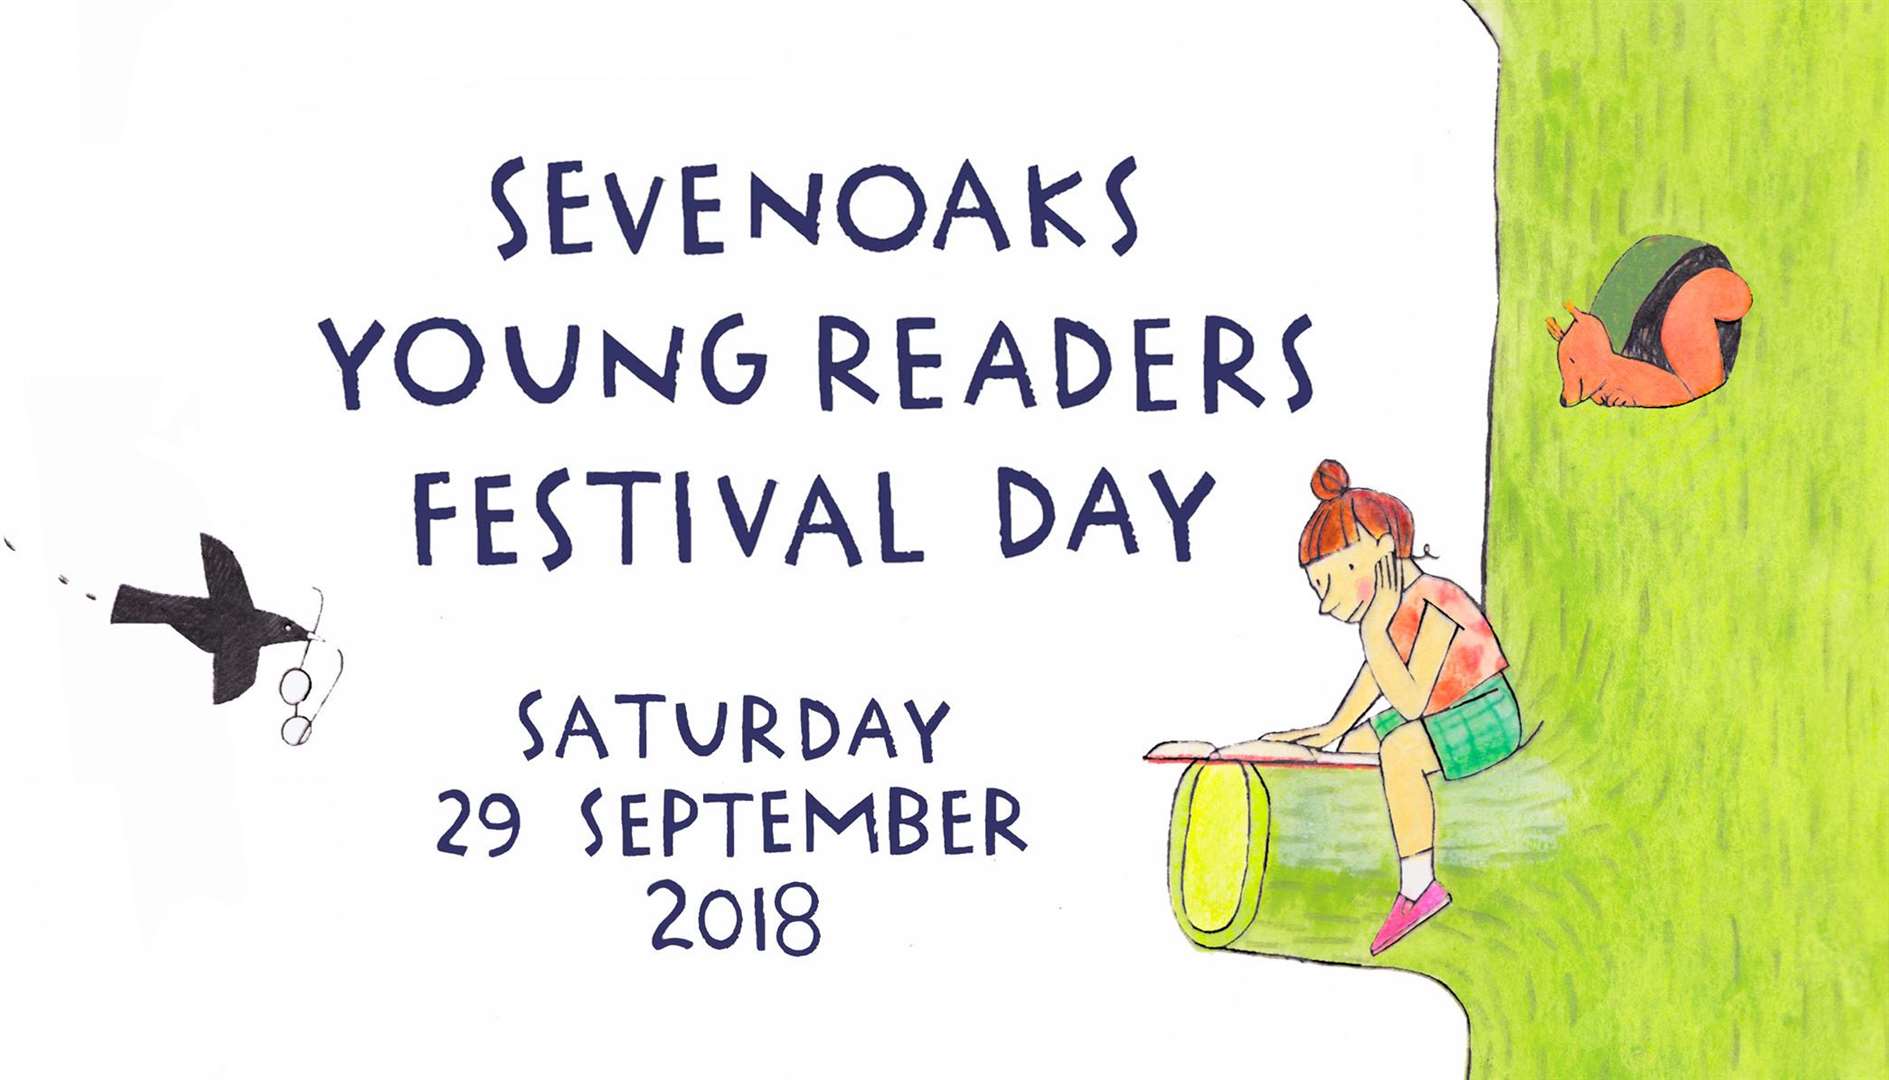 Sevenoaks Readers Festival Day